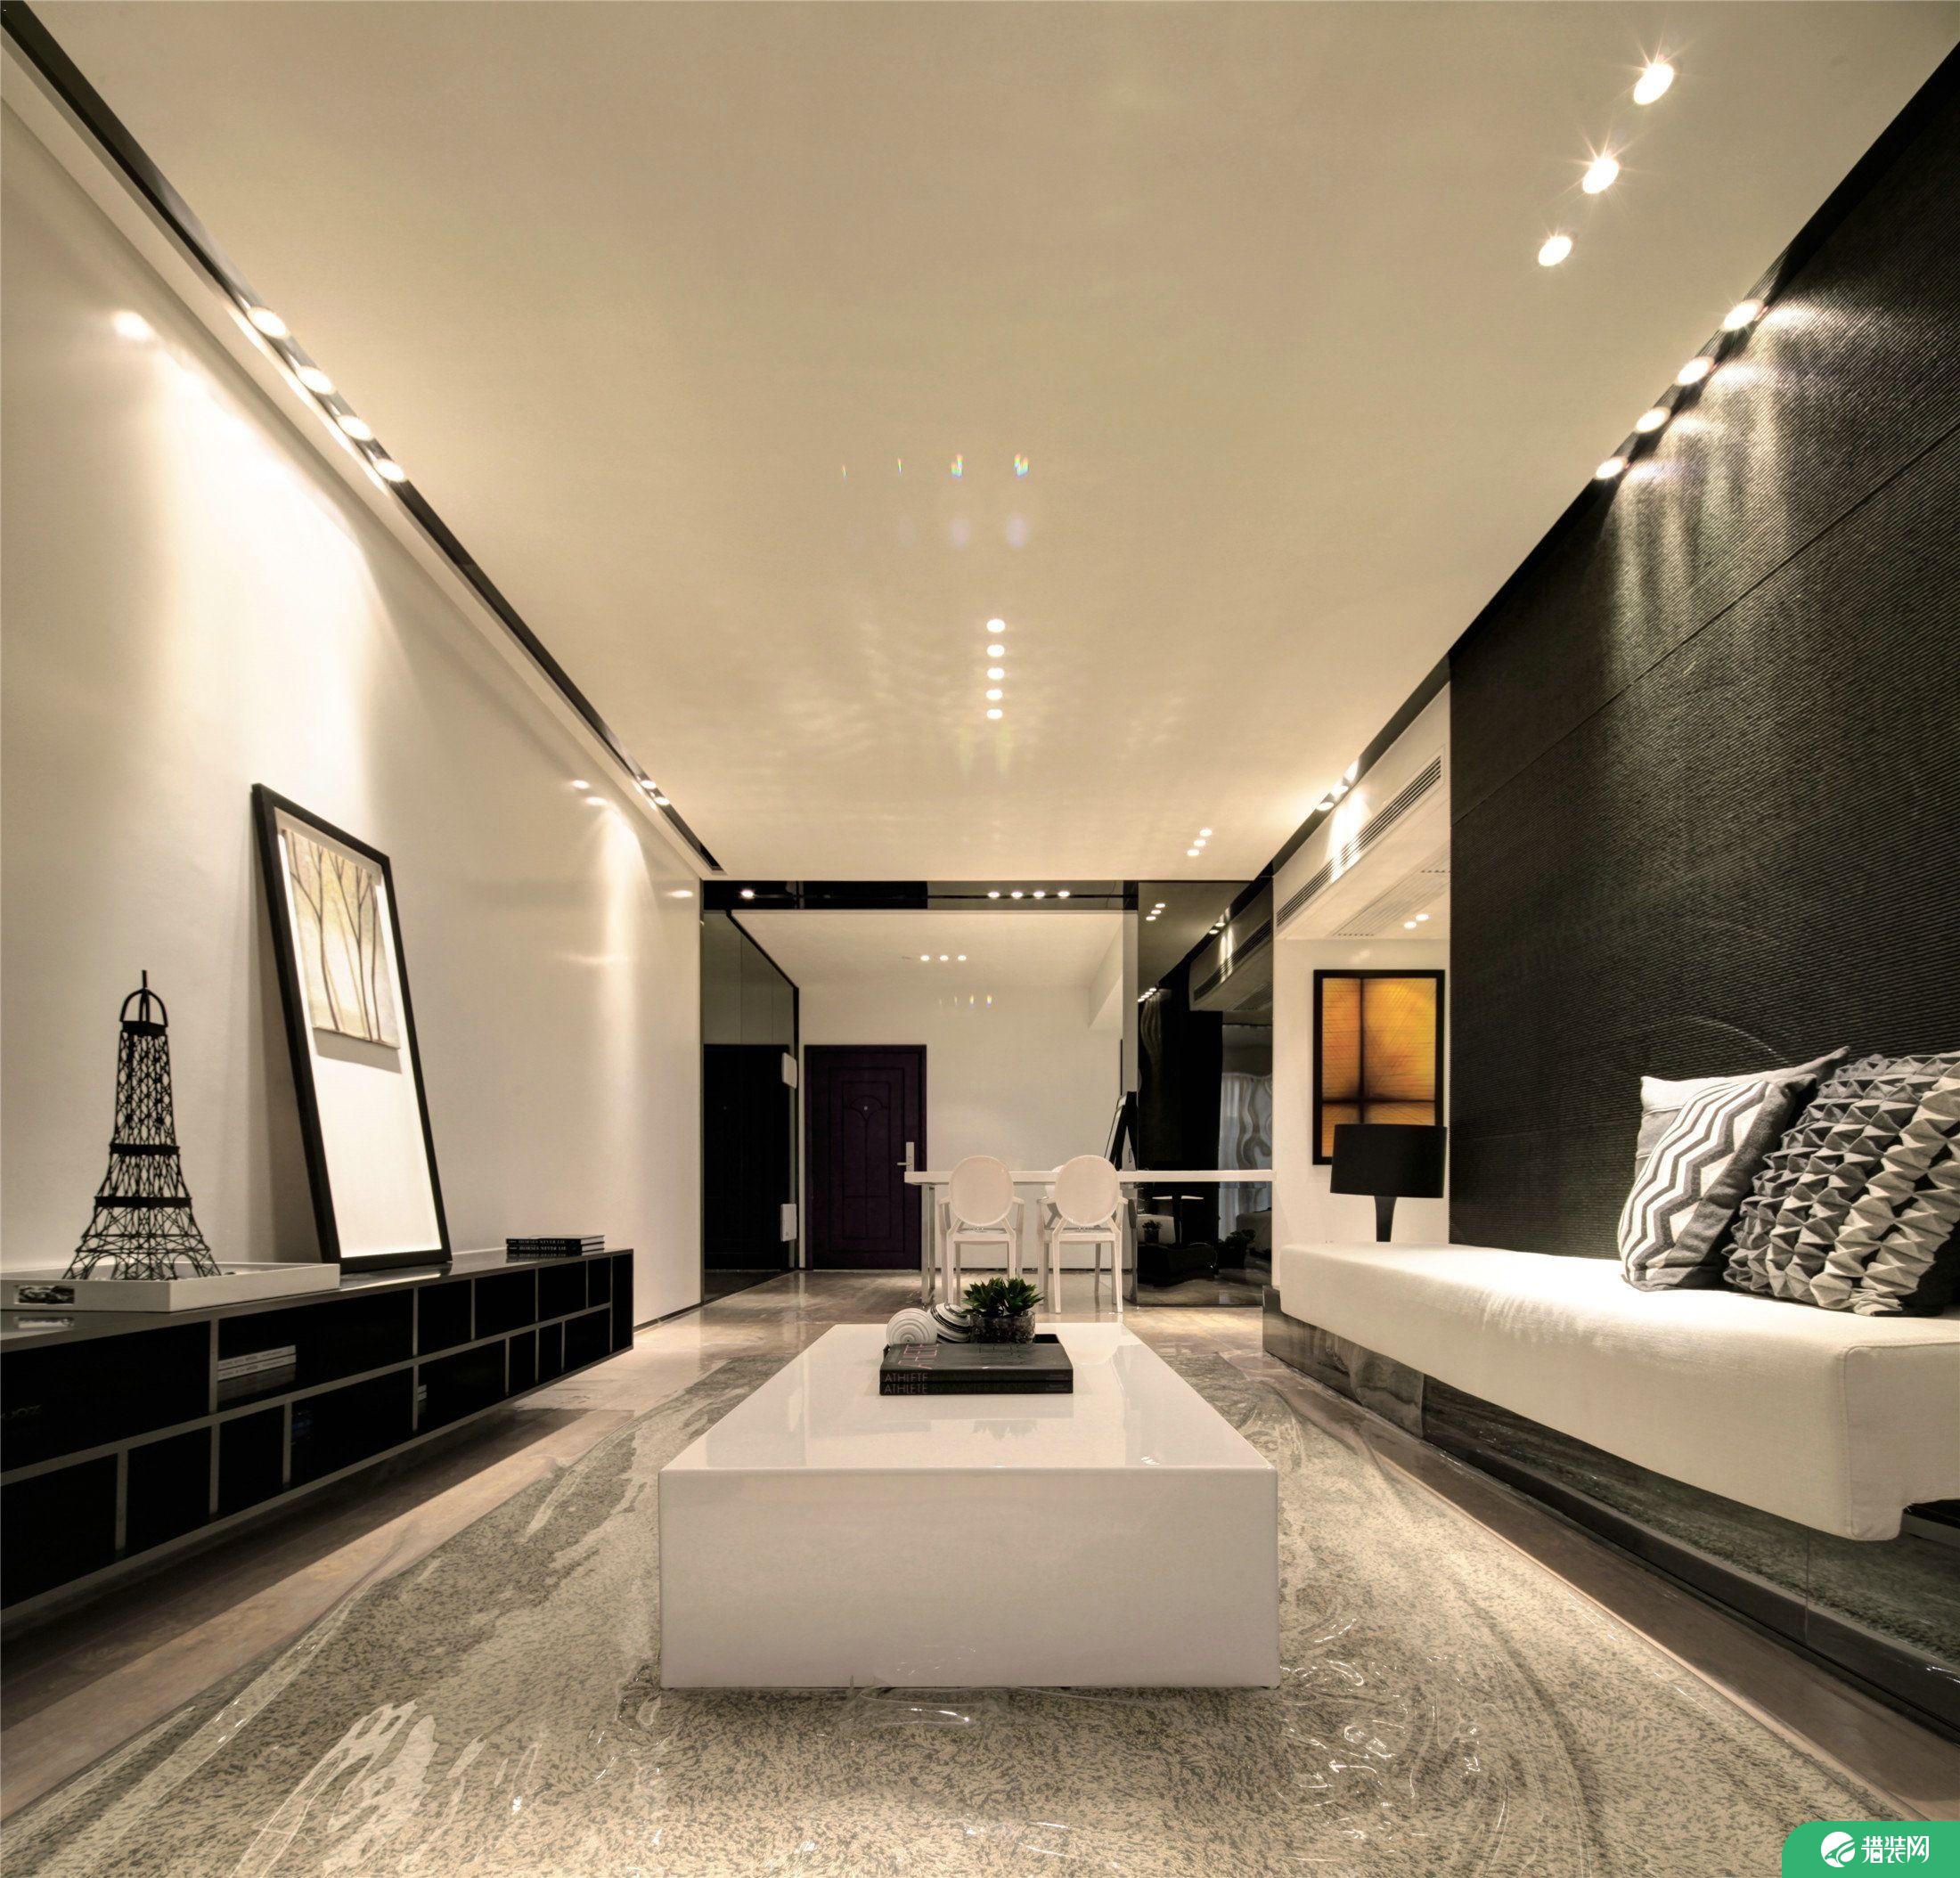 杭州创一居城南家园黑白现代风格装修效果图